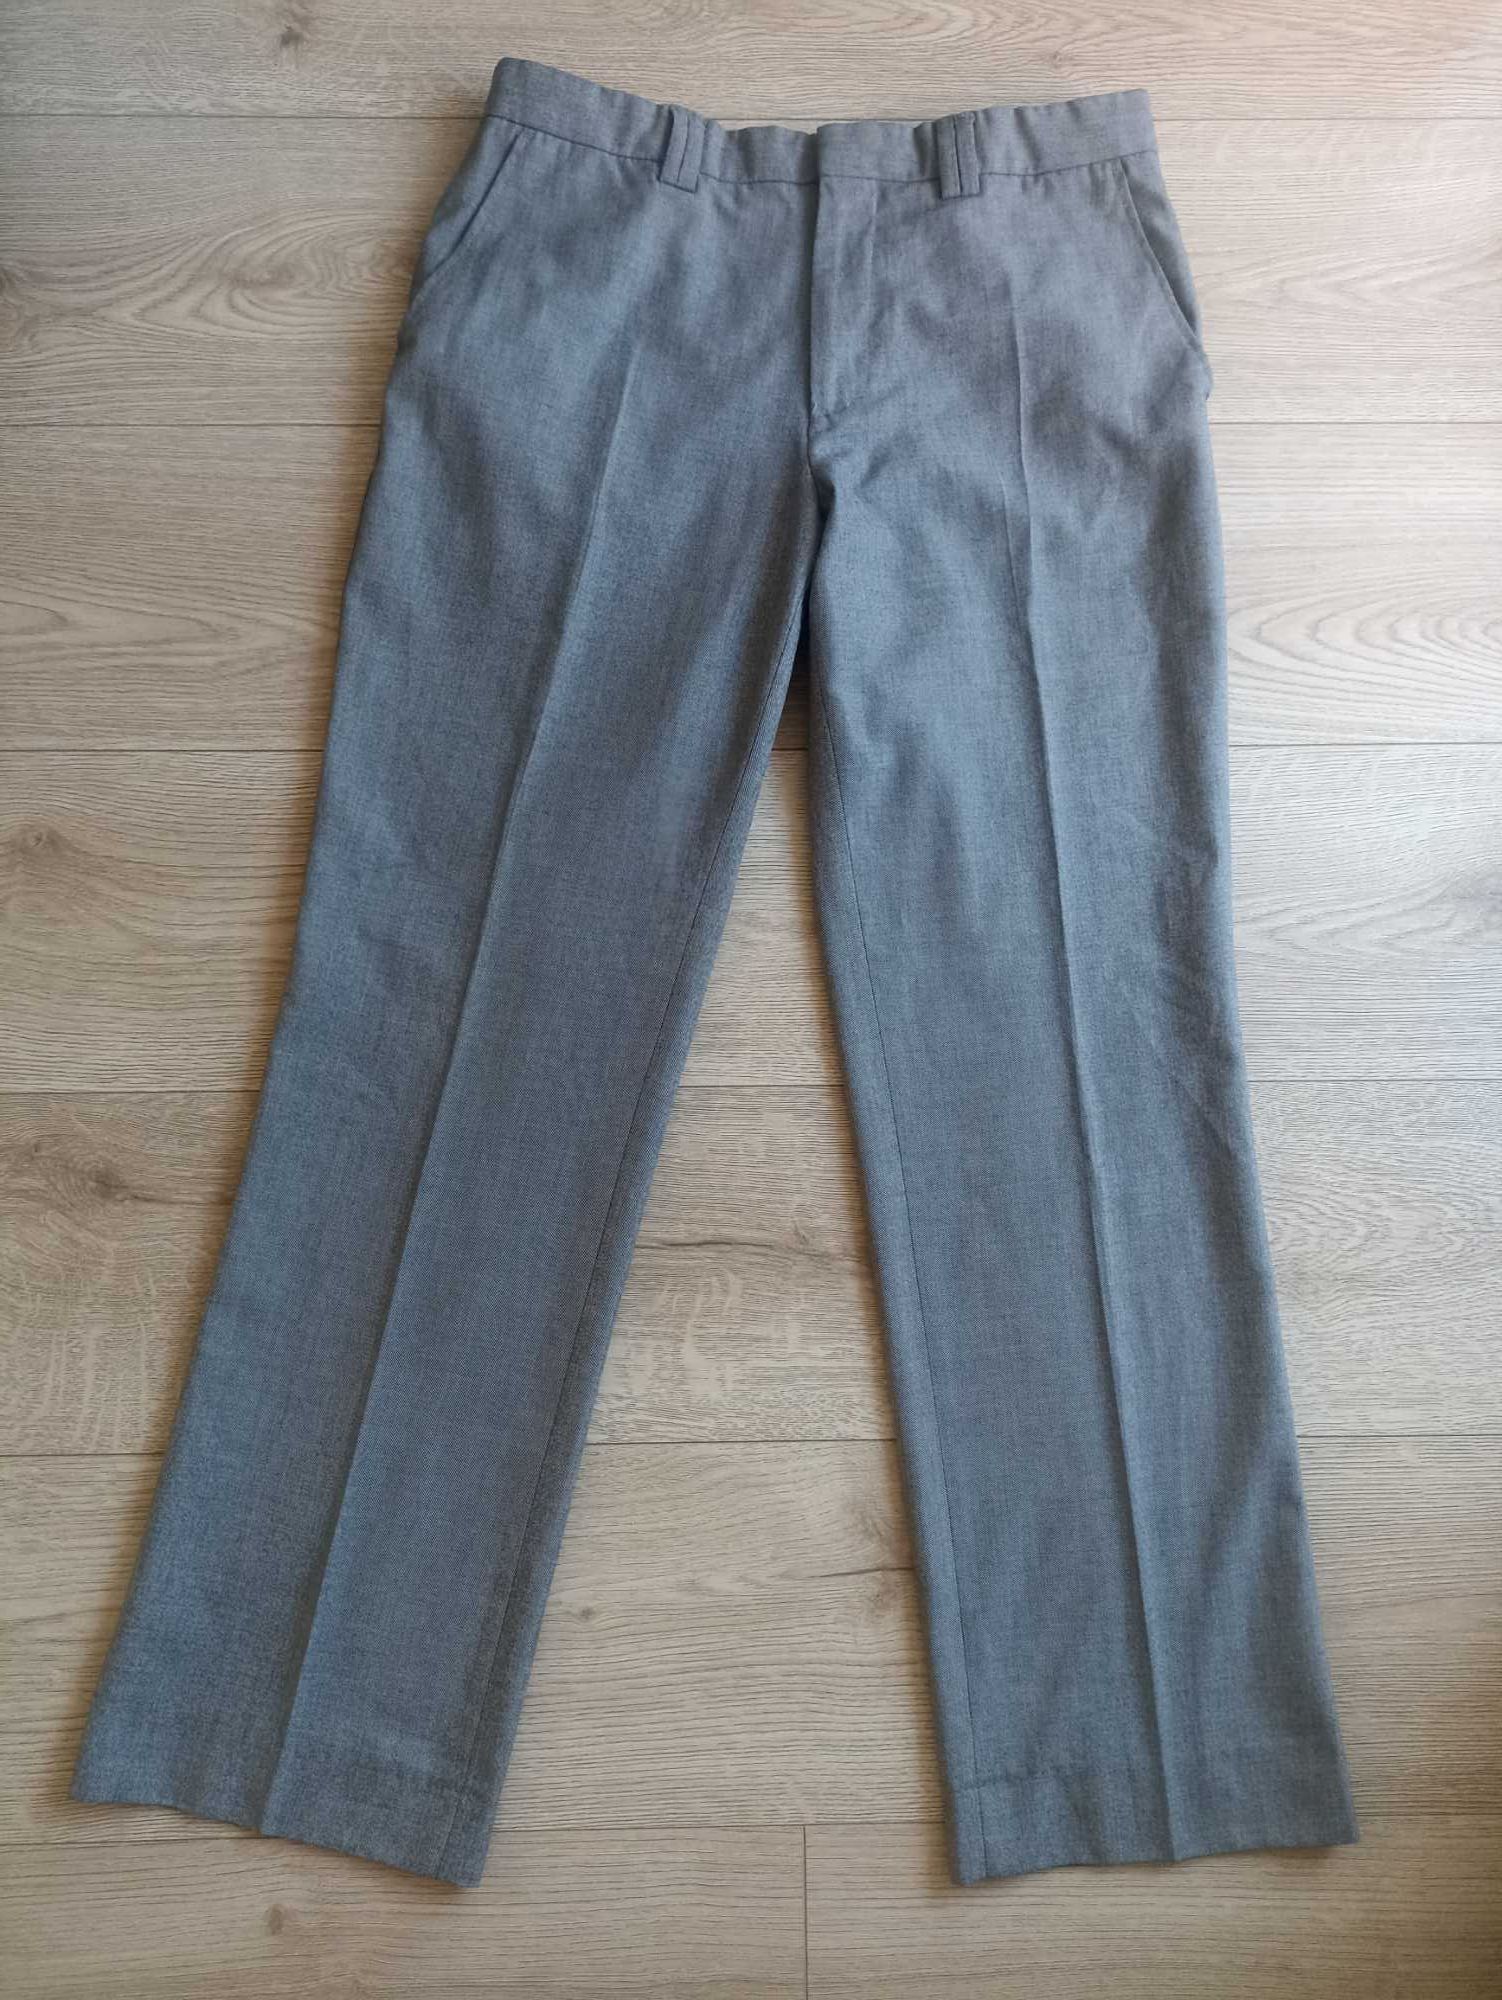 Męskie spodnie, River Island, rozmiar W32 L30, nowe bez metki